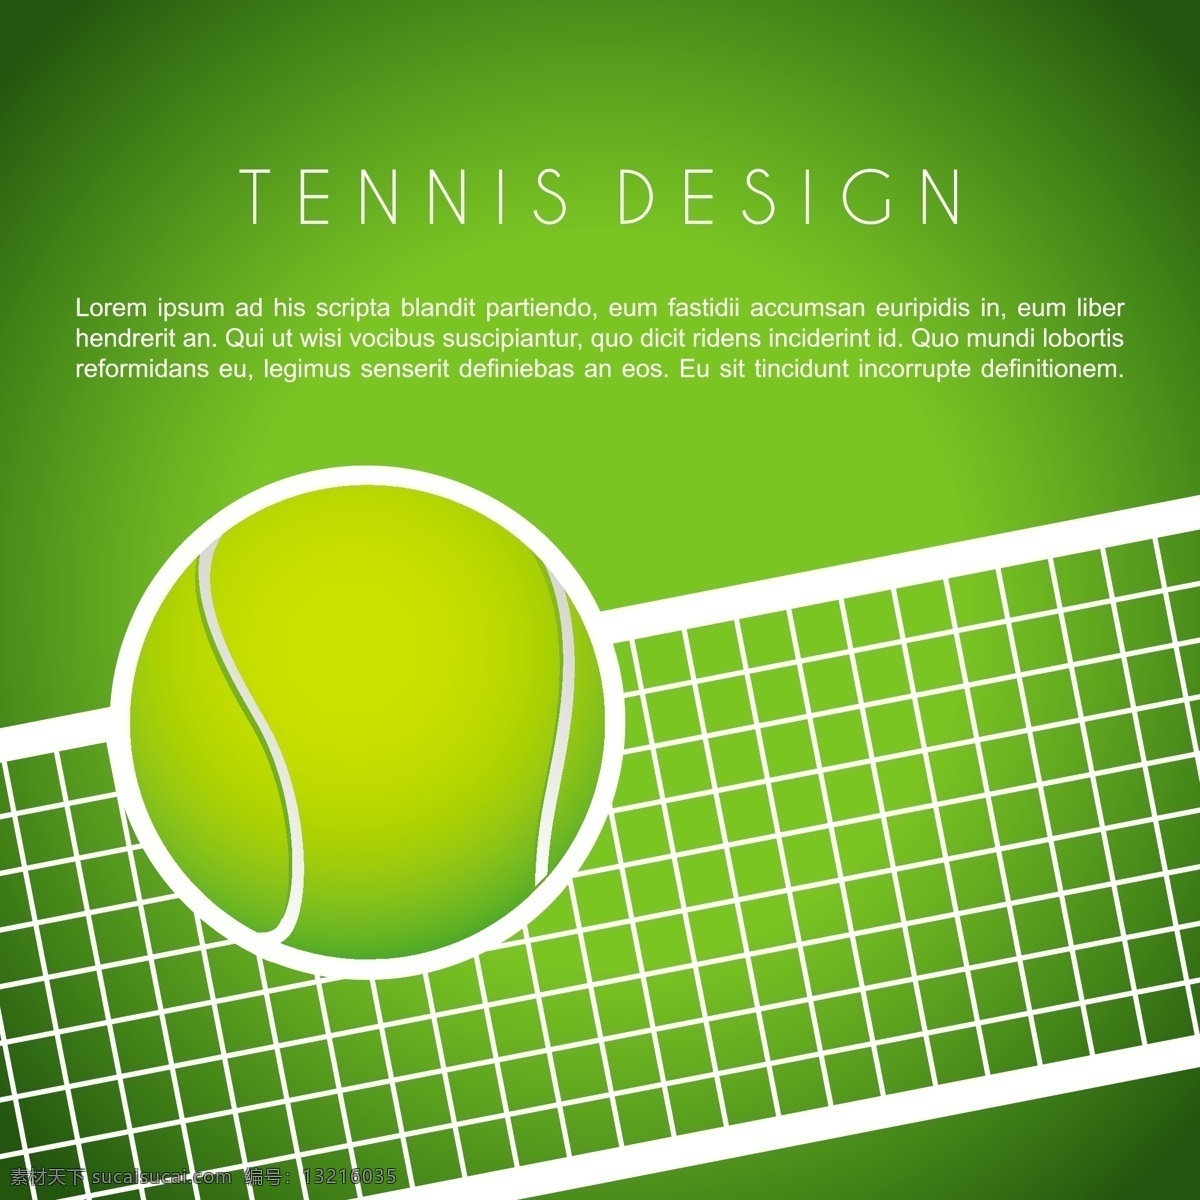 网球海报设计 网球运动 网球海报 网球 体育运动 体育项目 生活百科 矢量素材 绿色